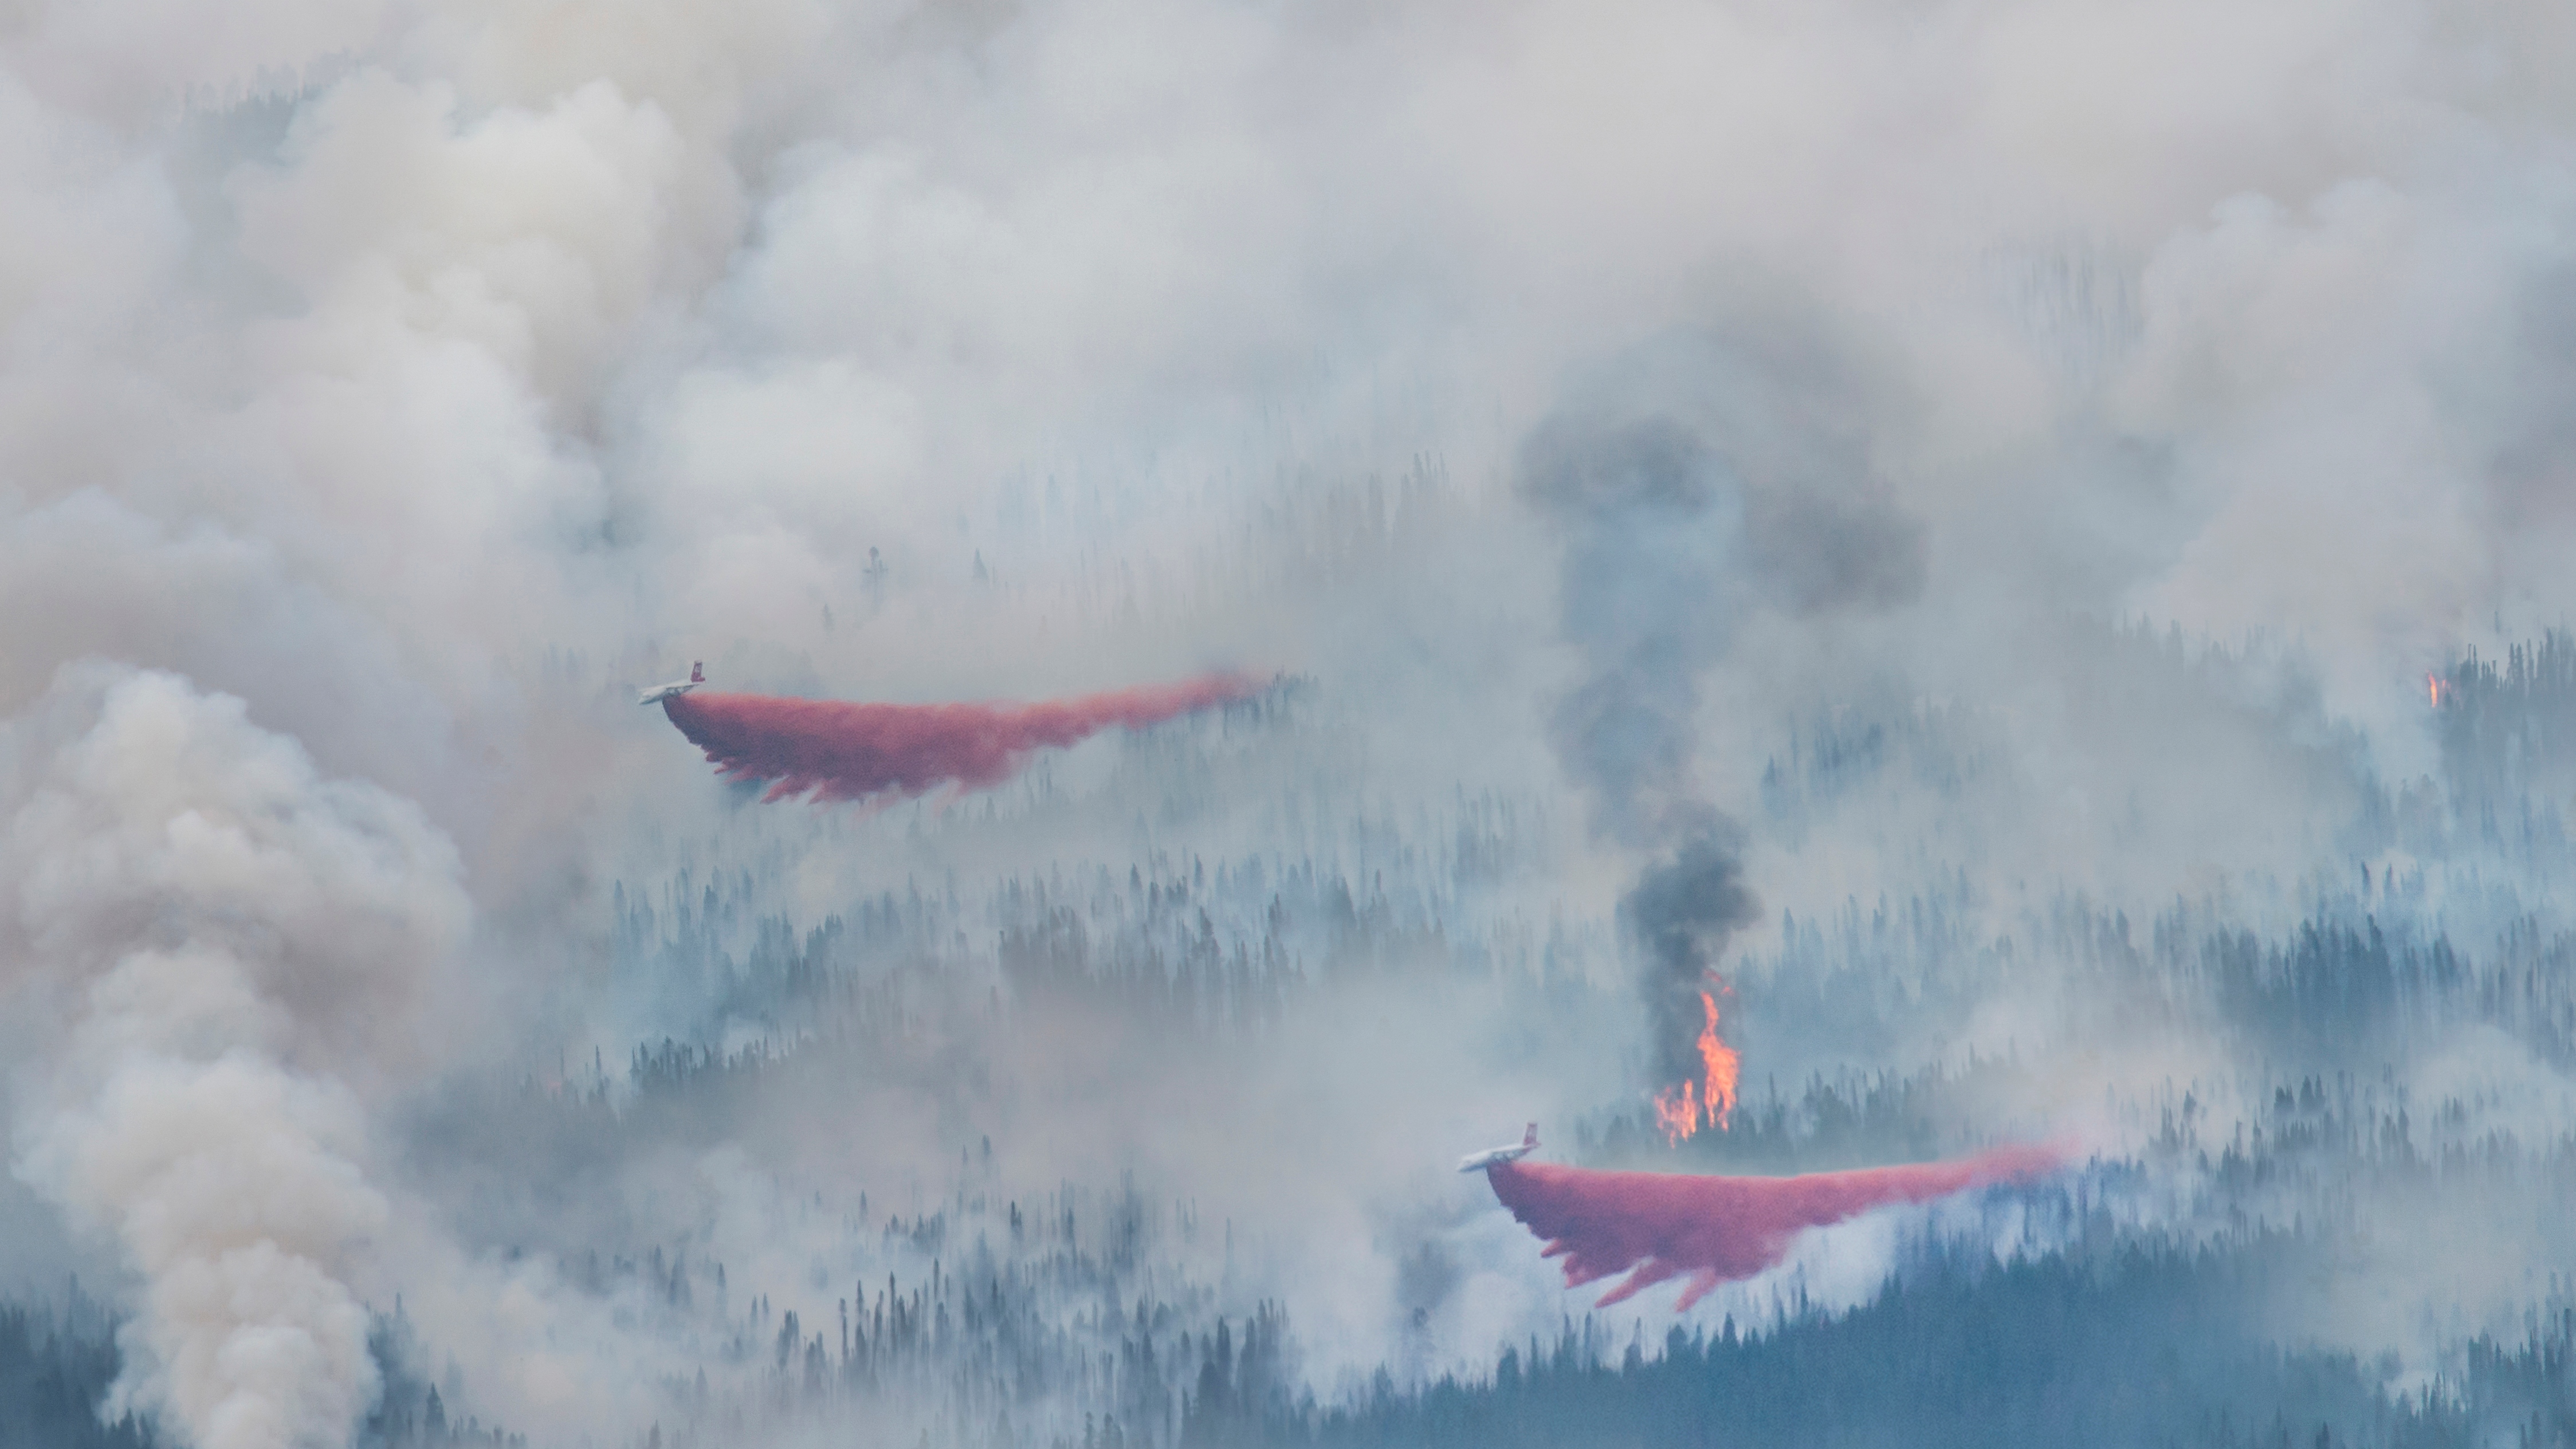 Plane discharging water on wildfire 